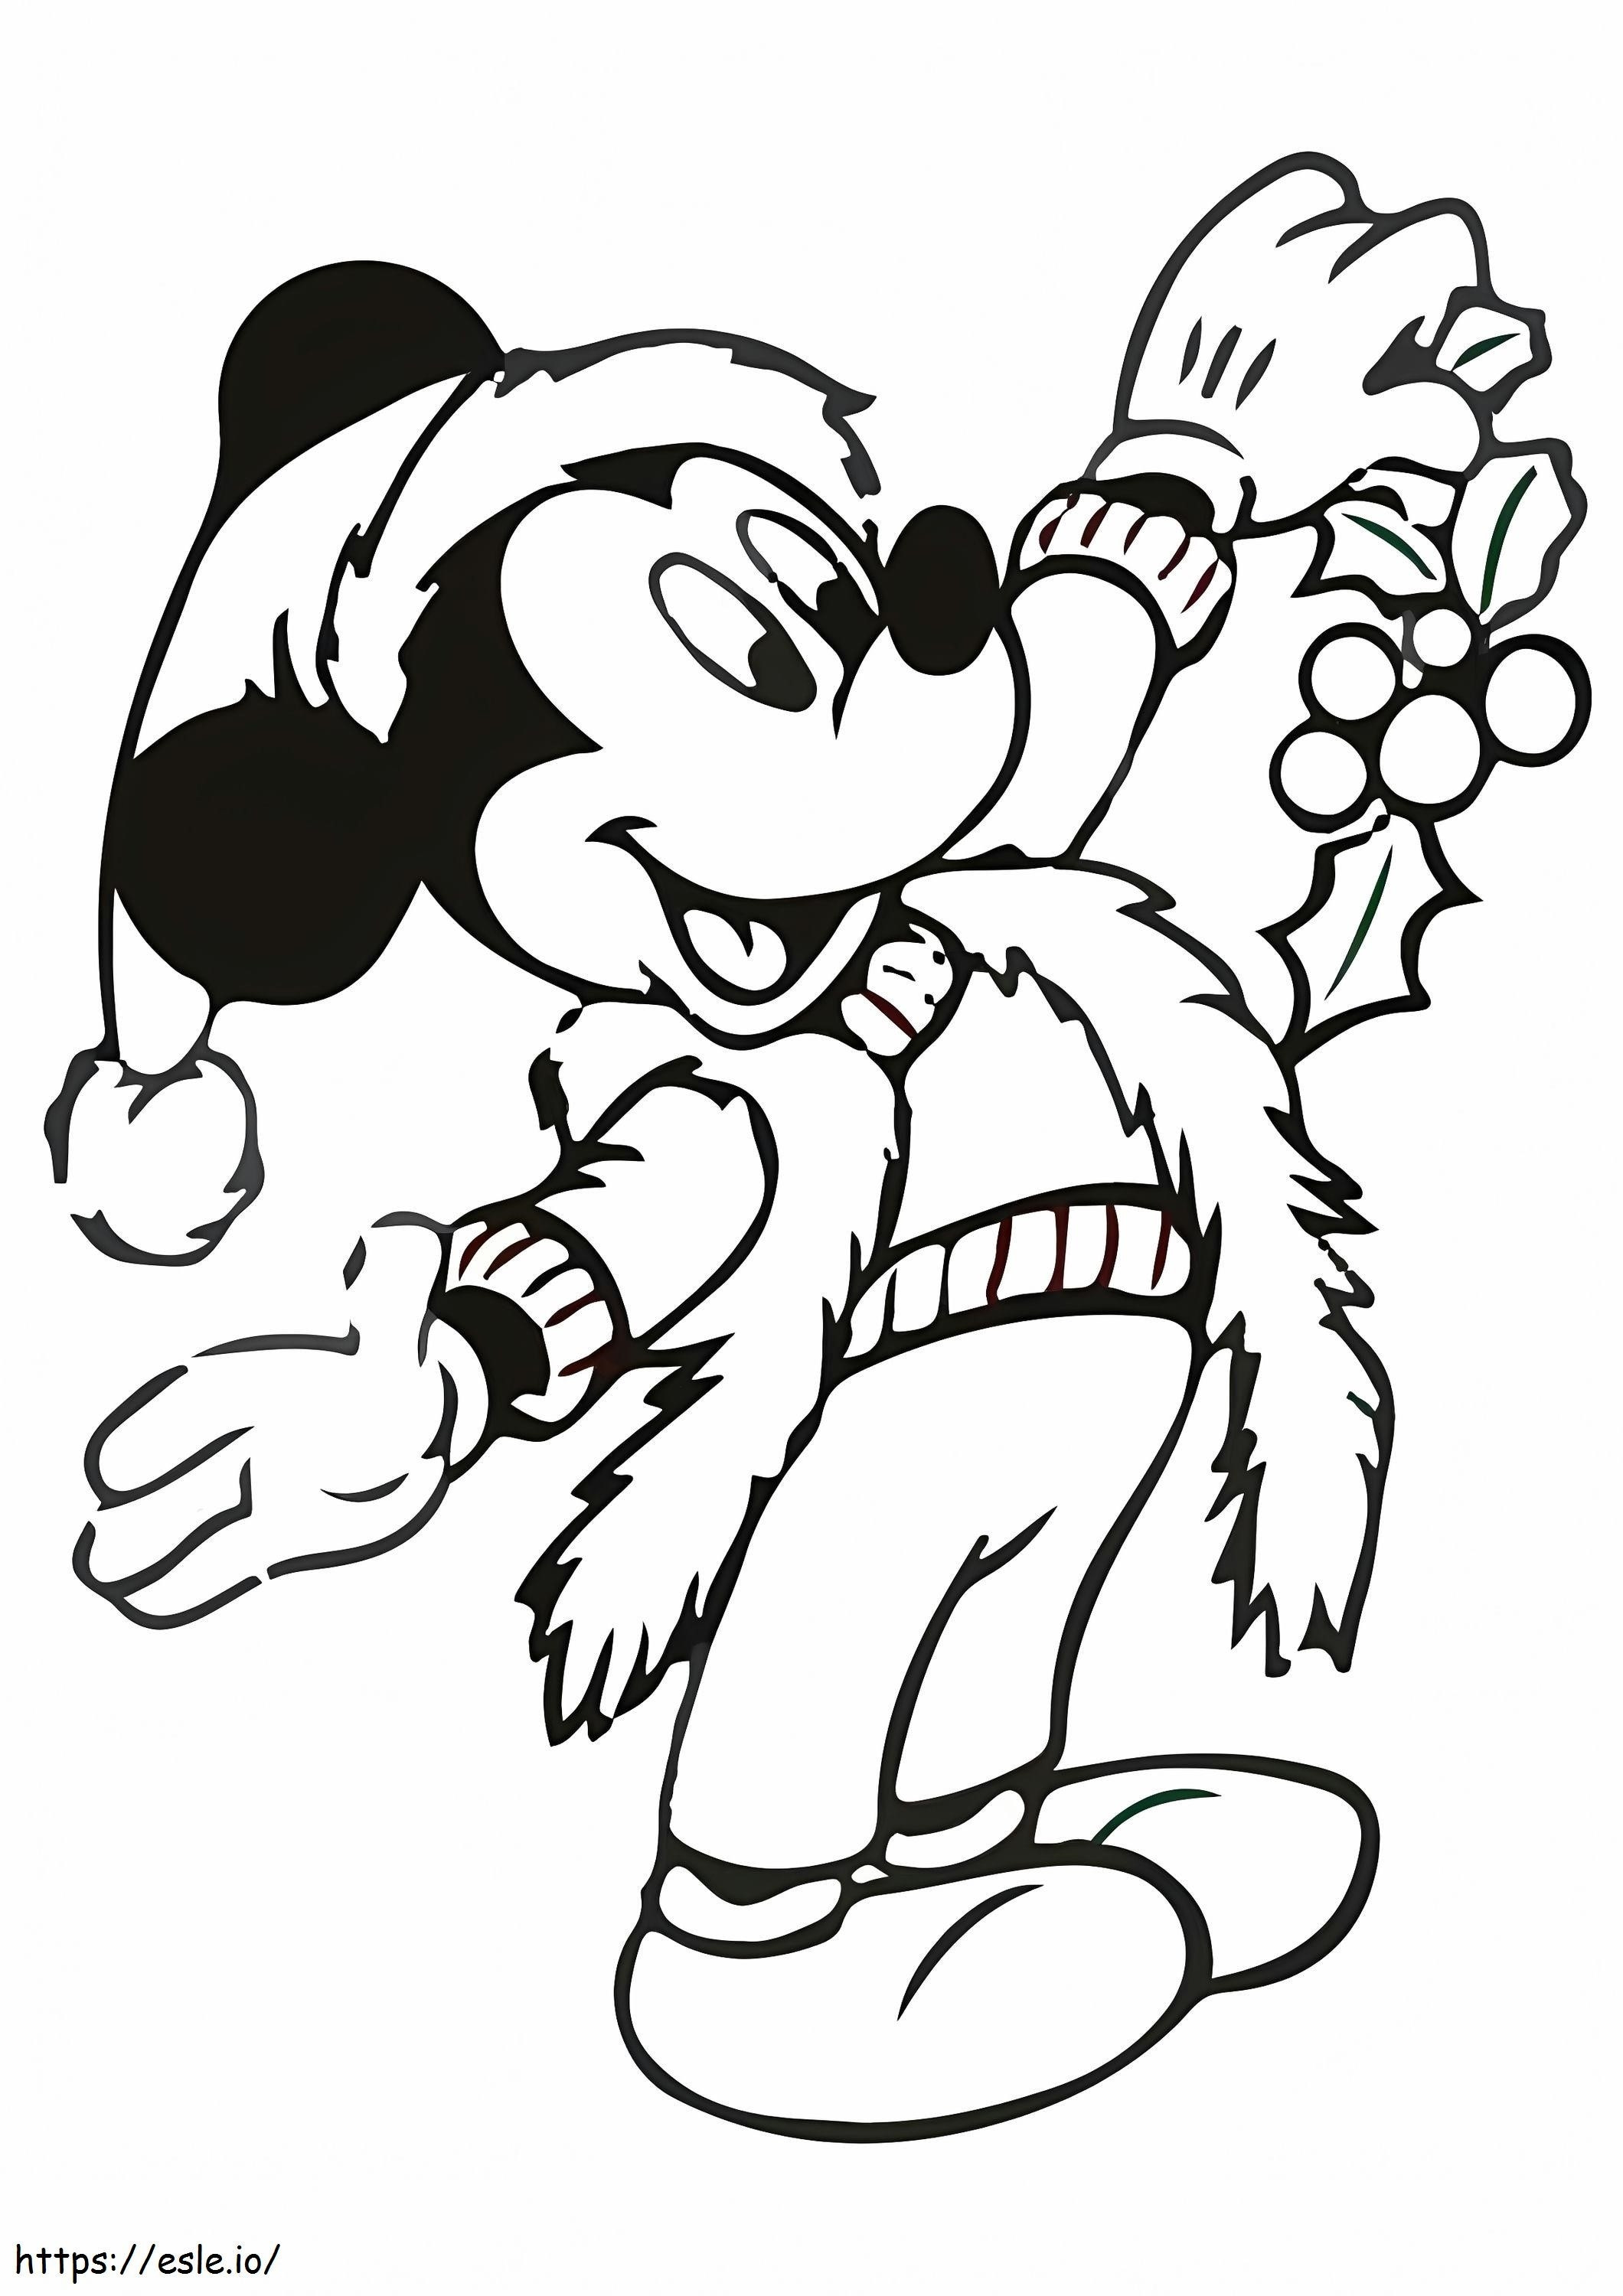  Mickey Mouse no Natal A4 para colorir